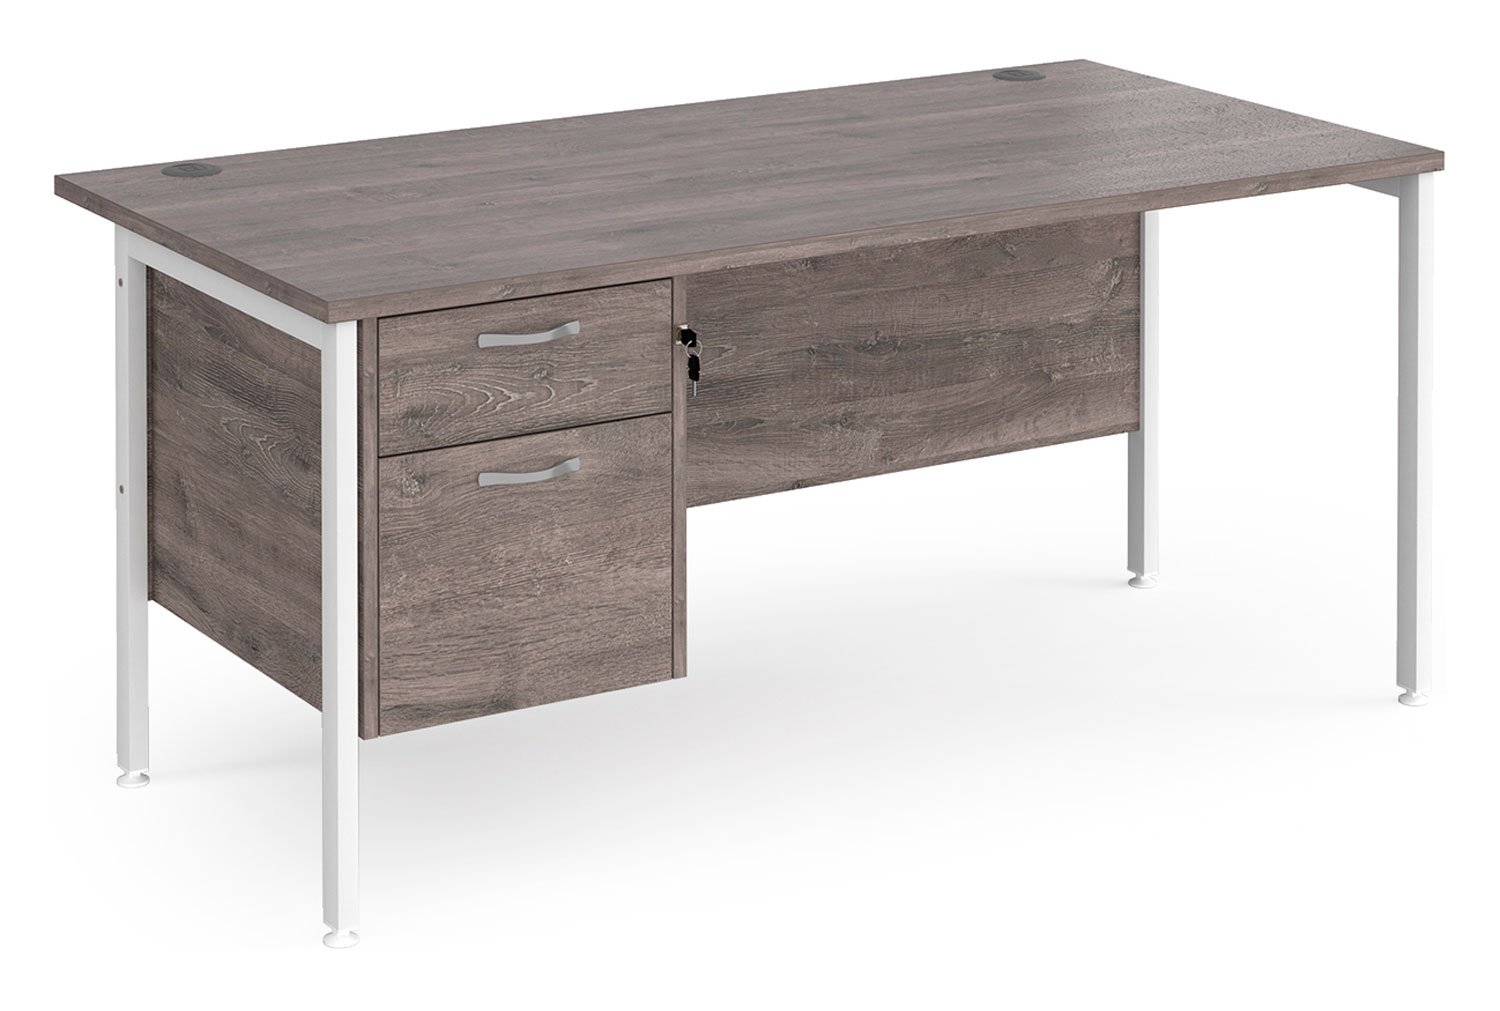 Value Line Deluxe H-Leg Rectangular Office Desk 2 Drawers (White Legs), 160wx80dx73h (cm), Grey Oak